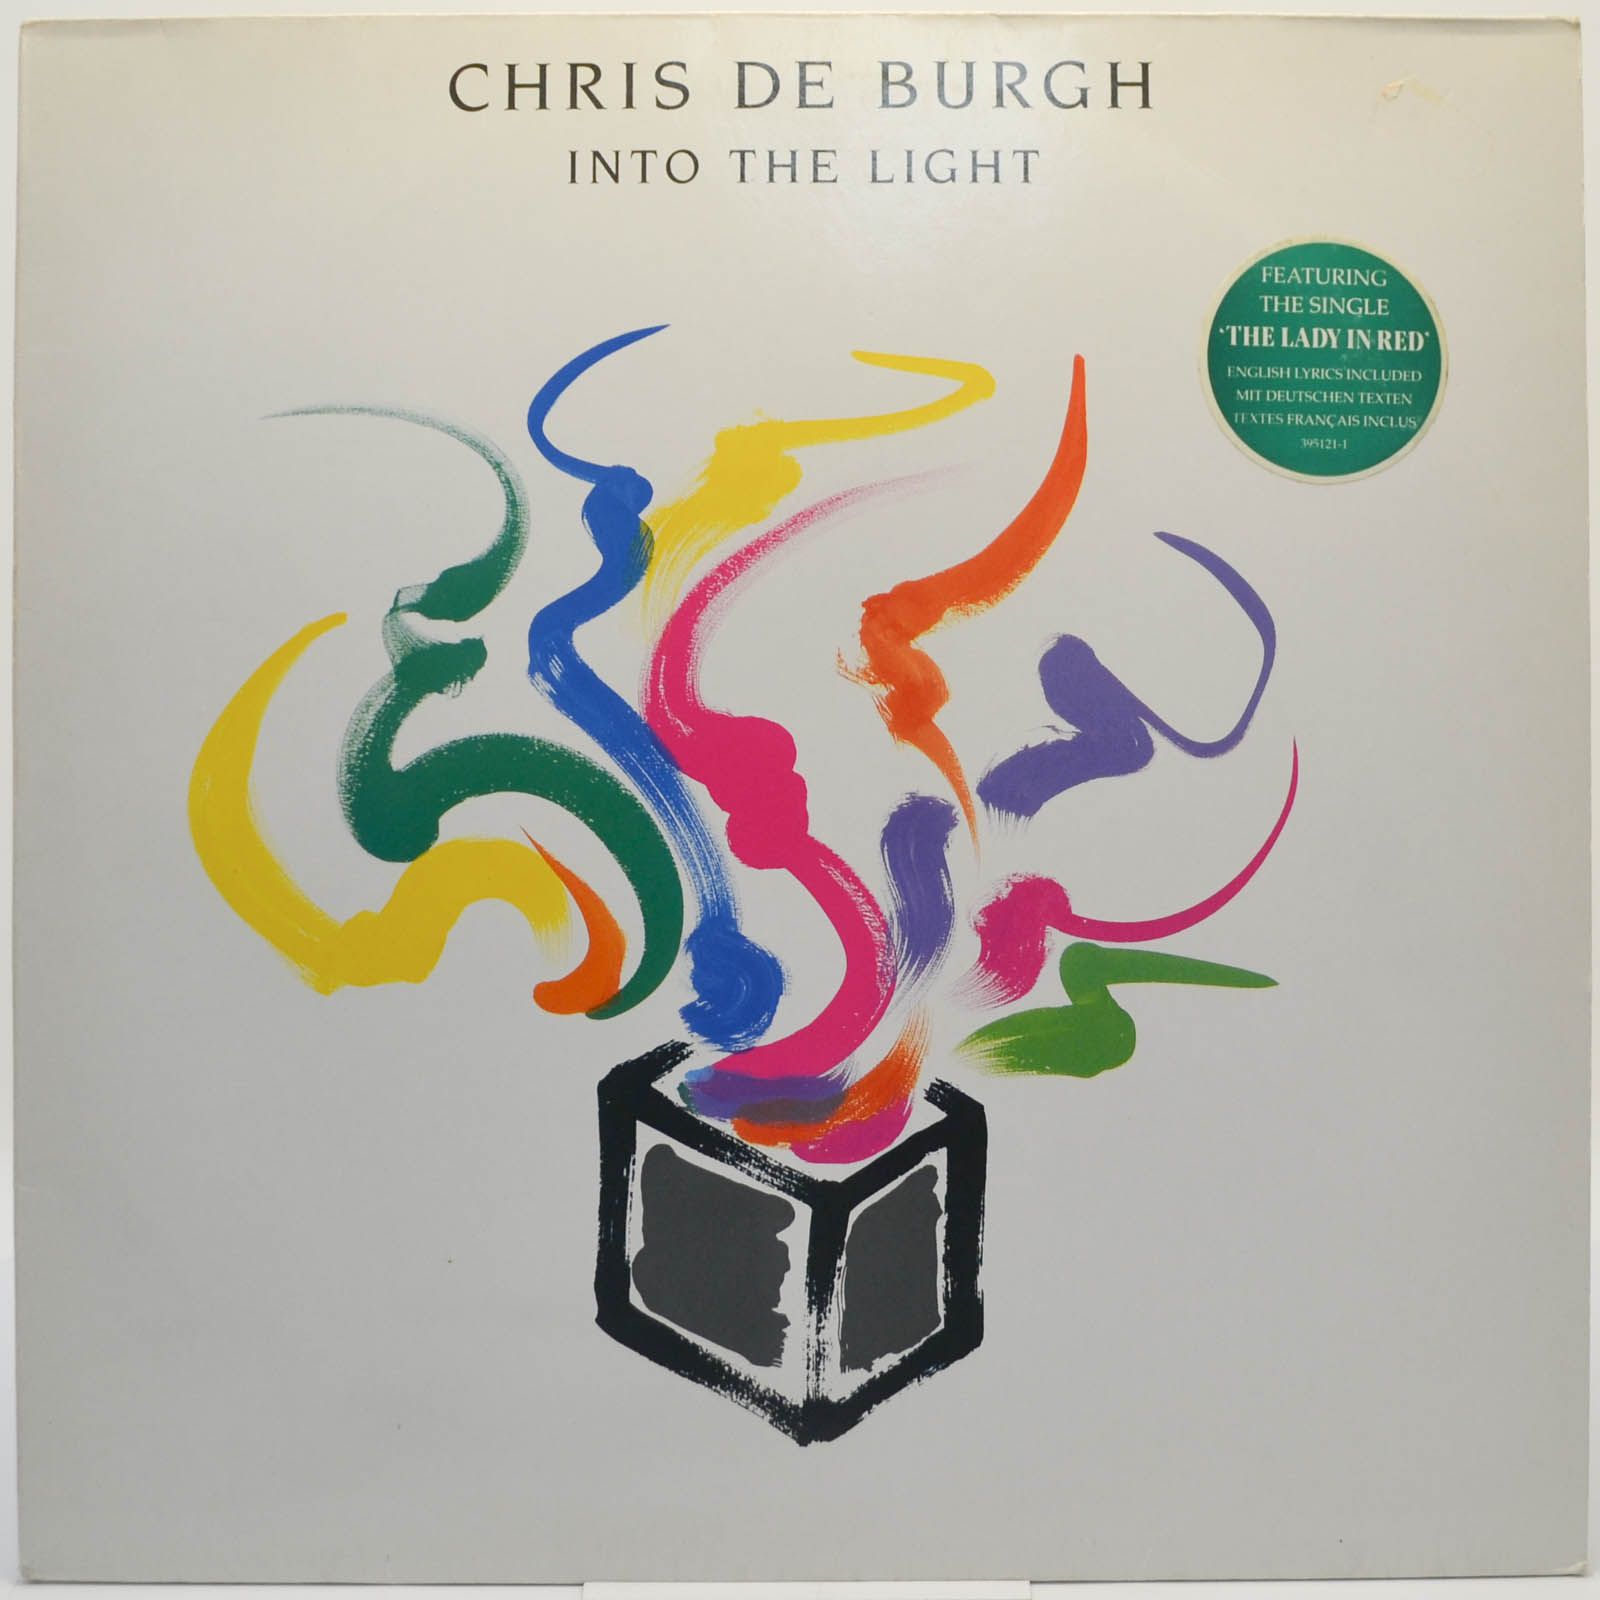 Chris de Burgh — Into The Light, 1986